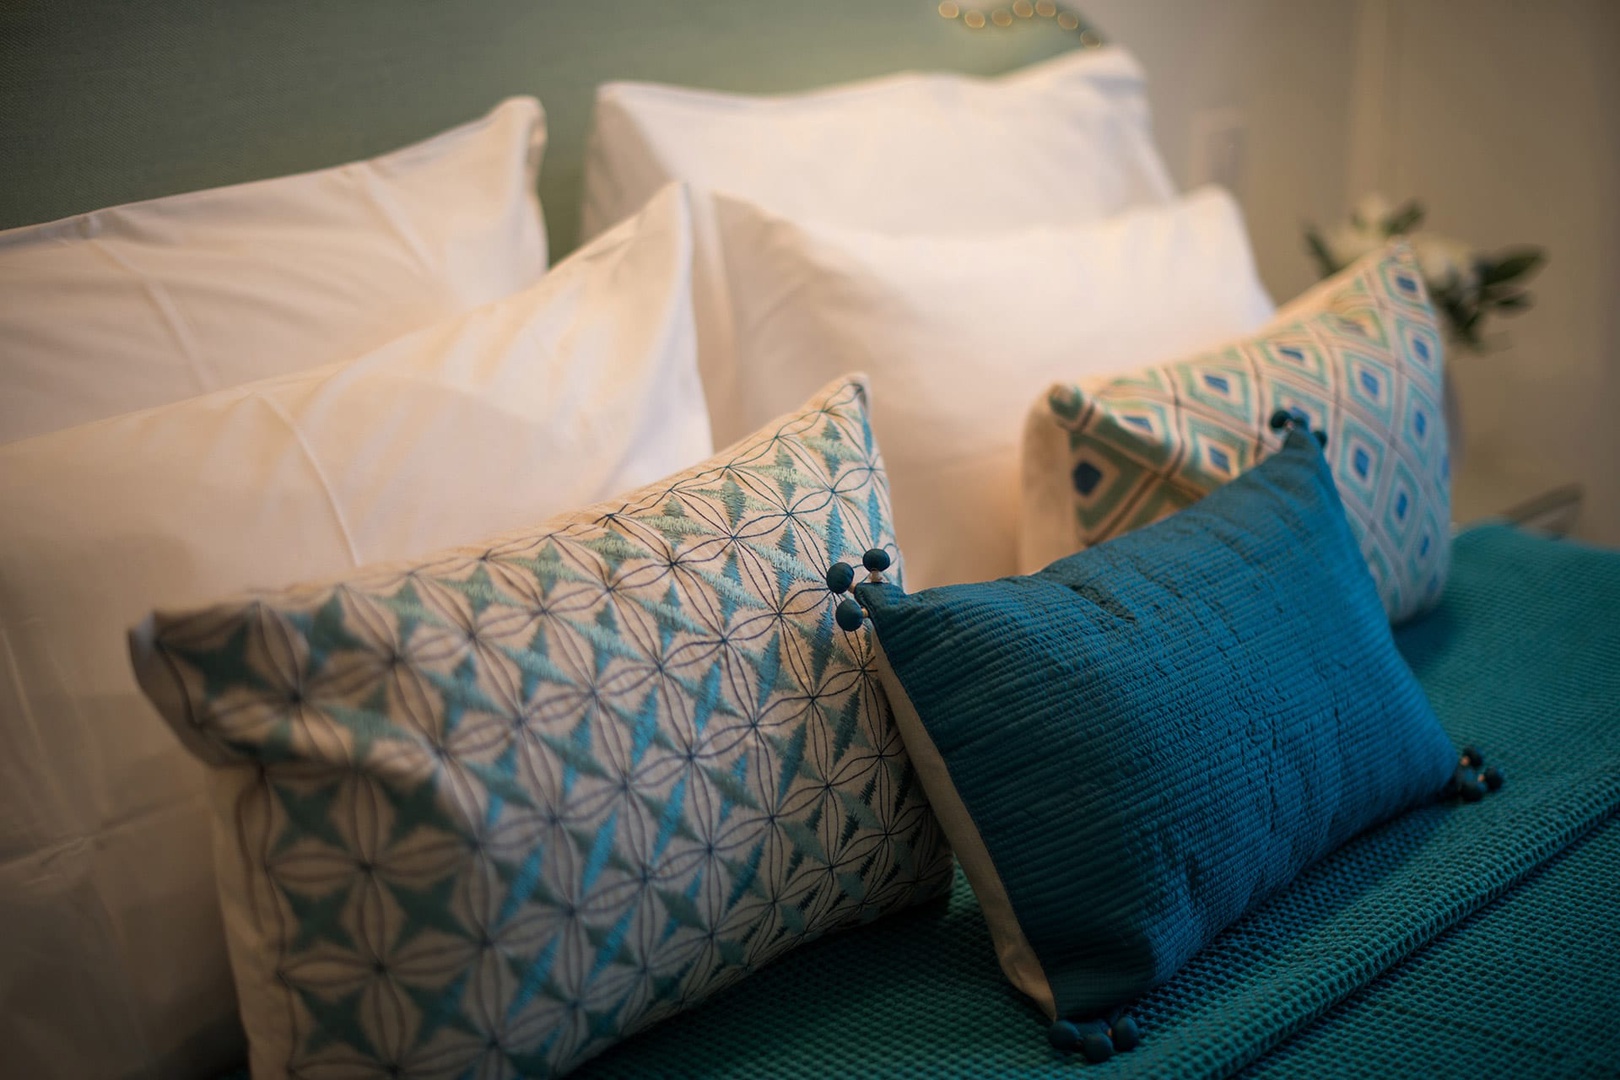 Get a good night's sleep in the cozy bedroom!